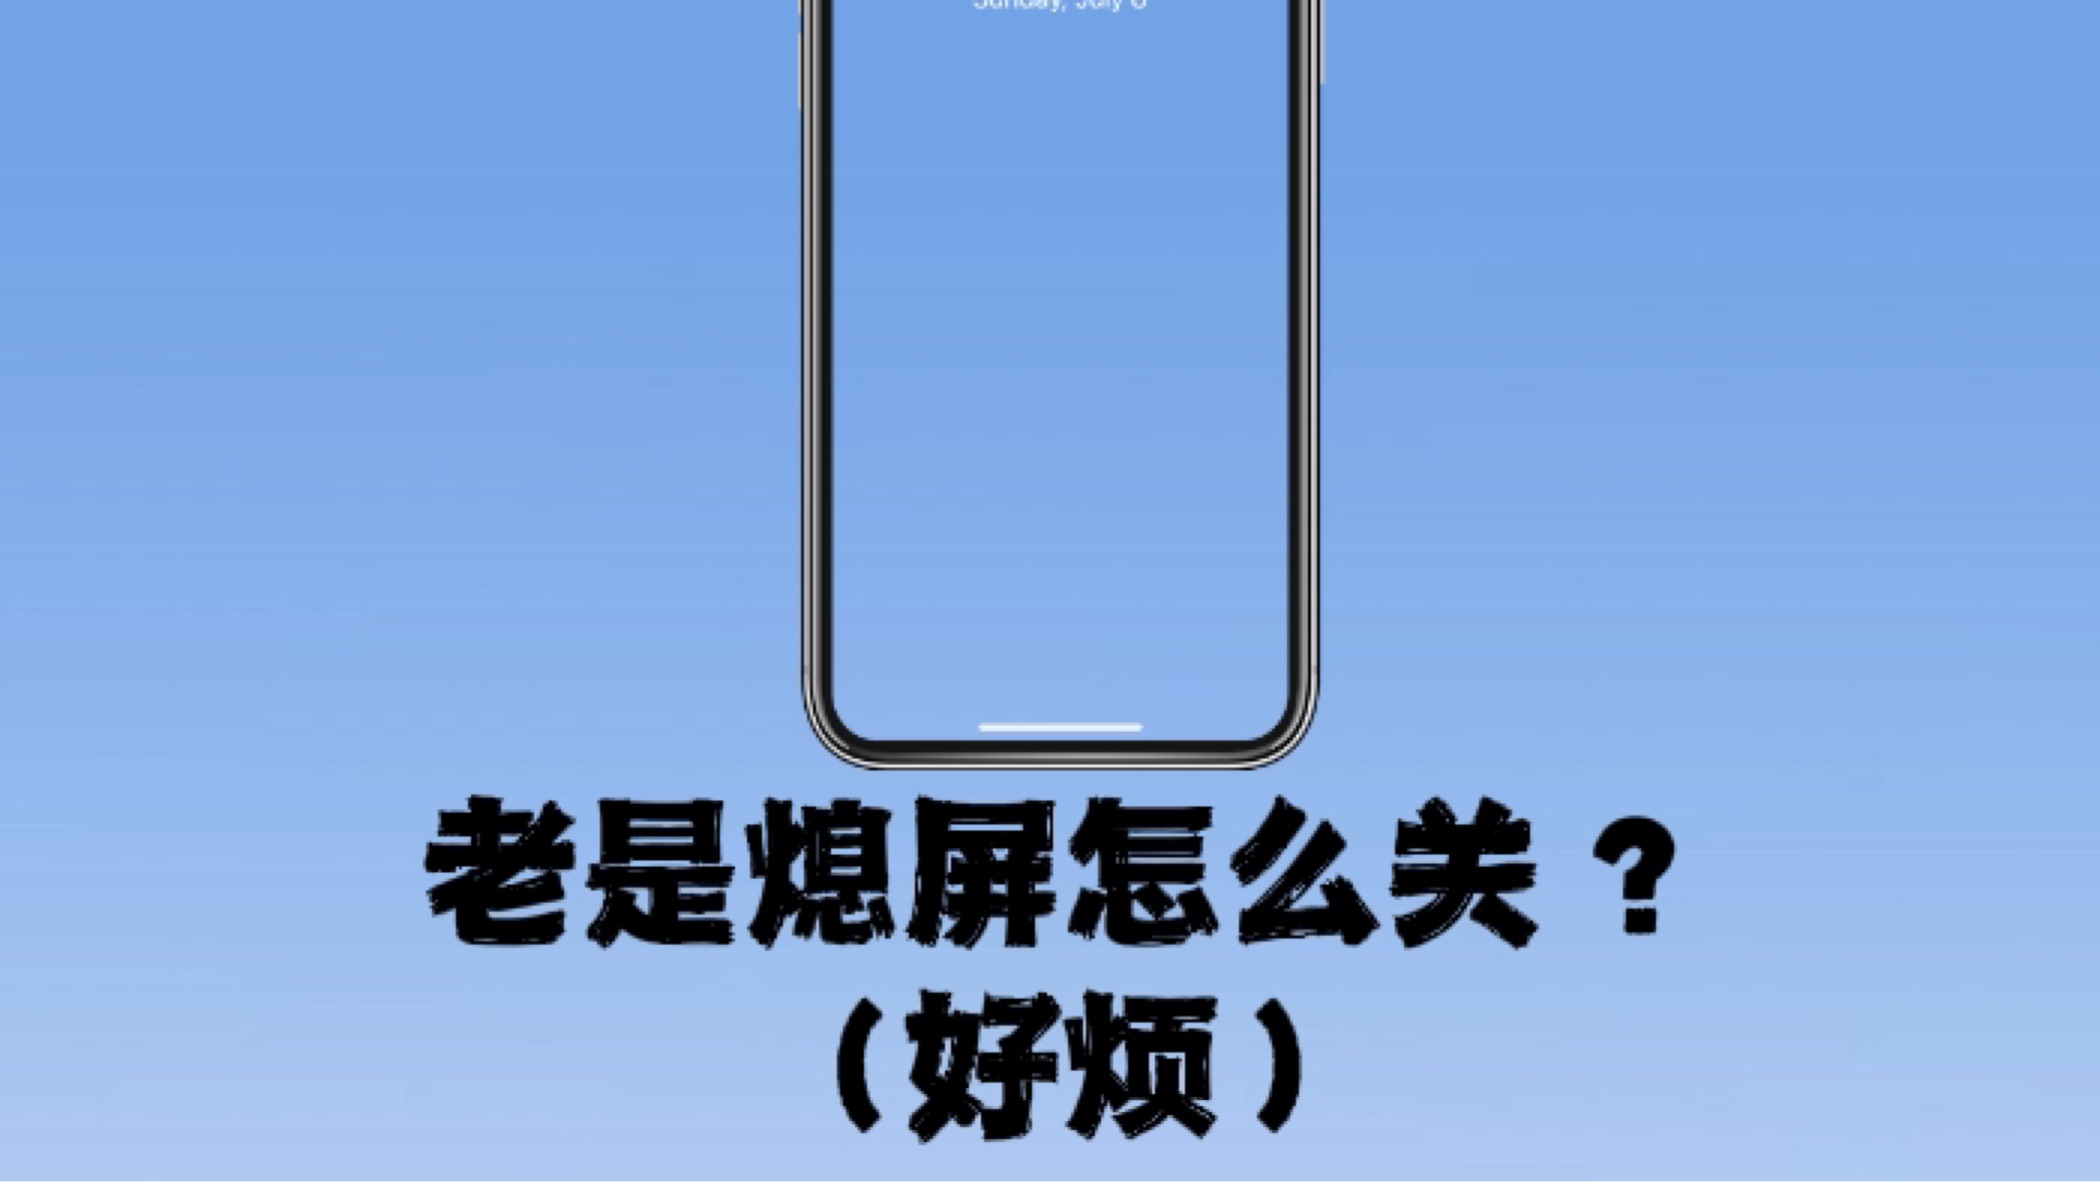 iPhone 13 Pro & iPhone 13 Pro Max 理论上可以支持熄屏显示吗？ - 知乎